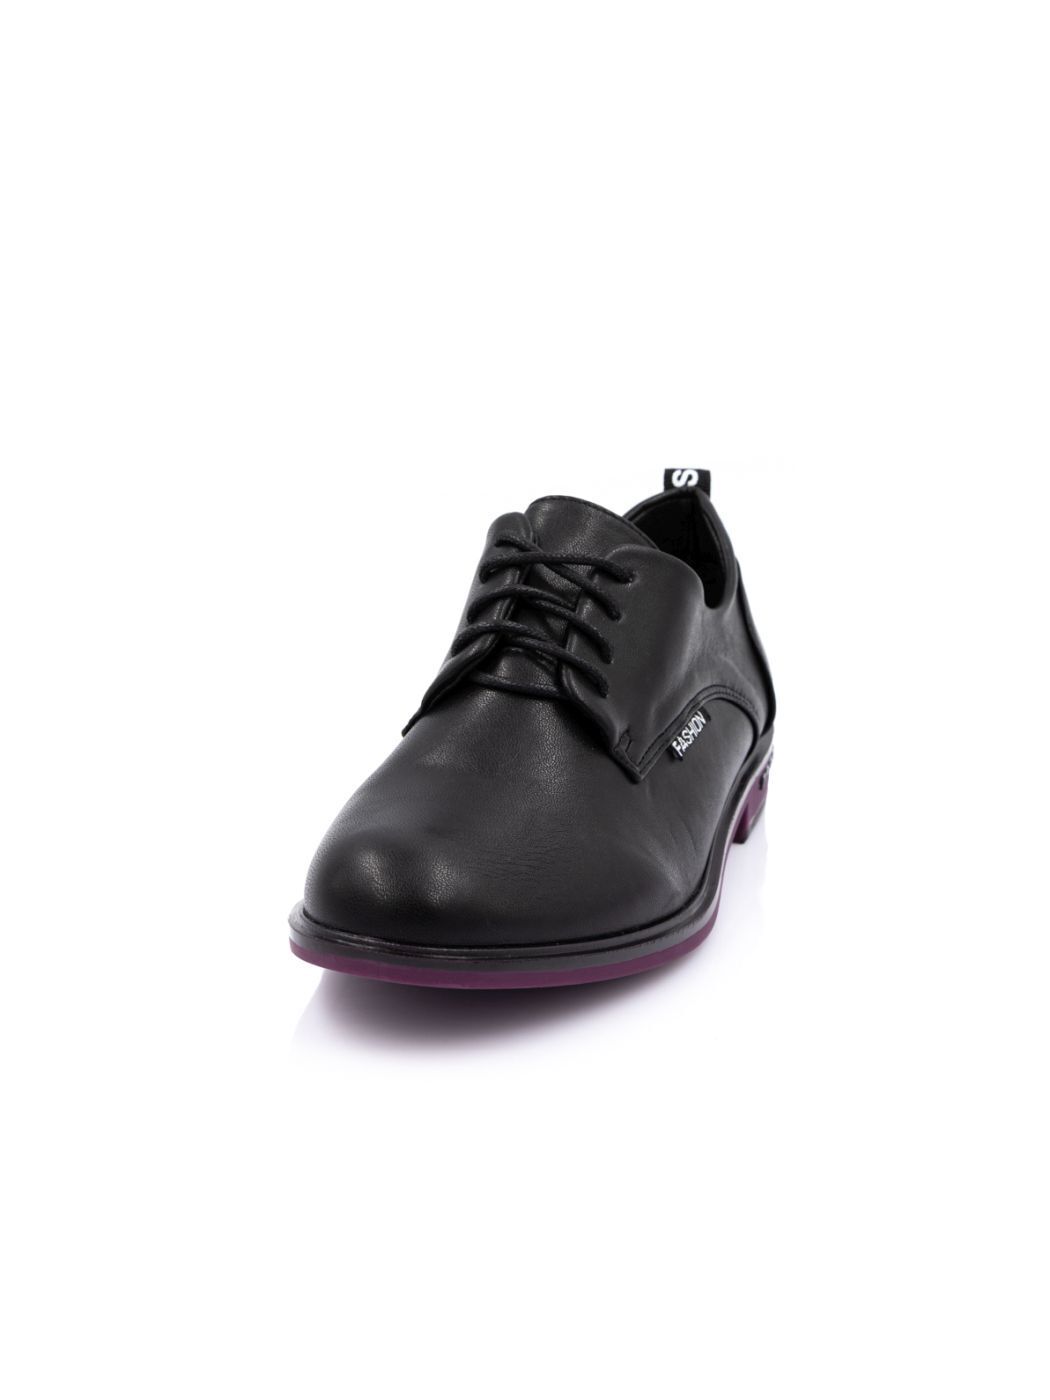 Туфли Oxfords женские черные экокожа демисезон от производителя 1M вид 2